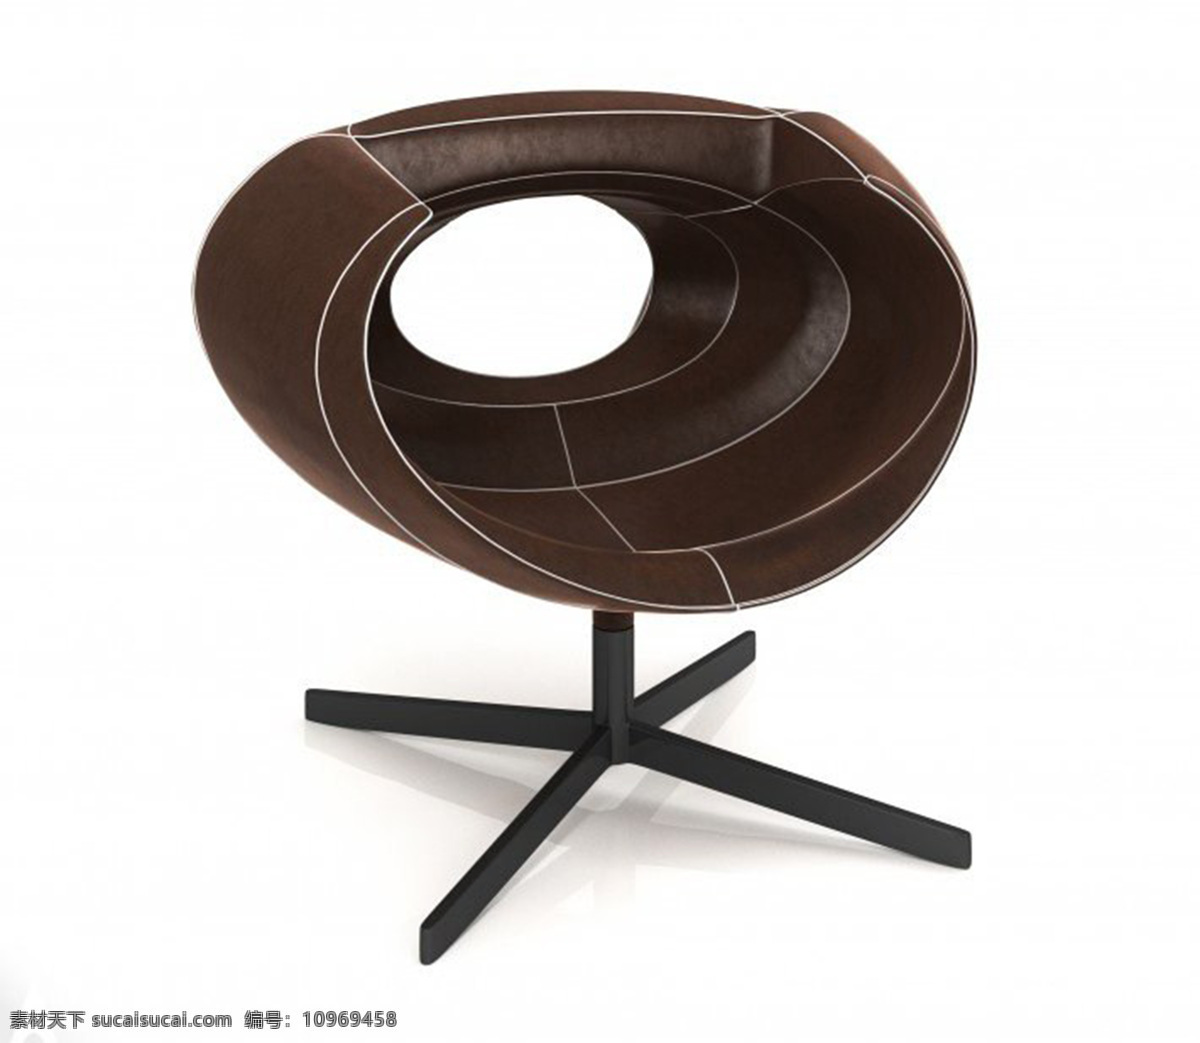 扶手椅 禅 产品设计 创意 工业设计 家居 生活 桌子